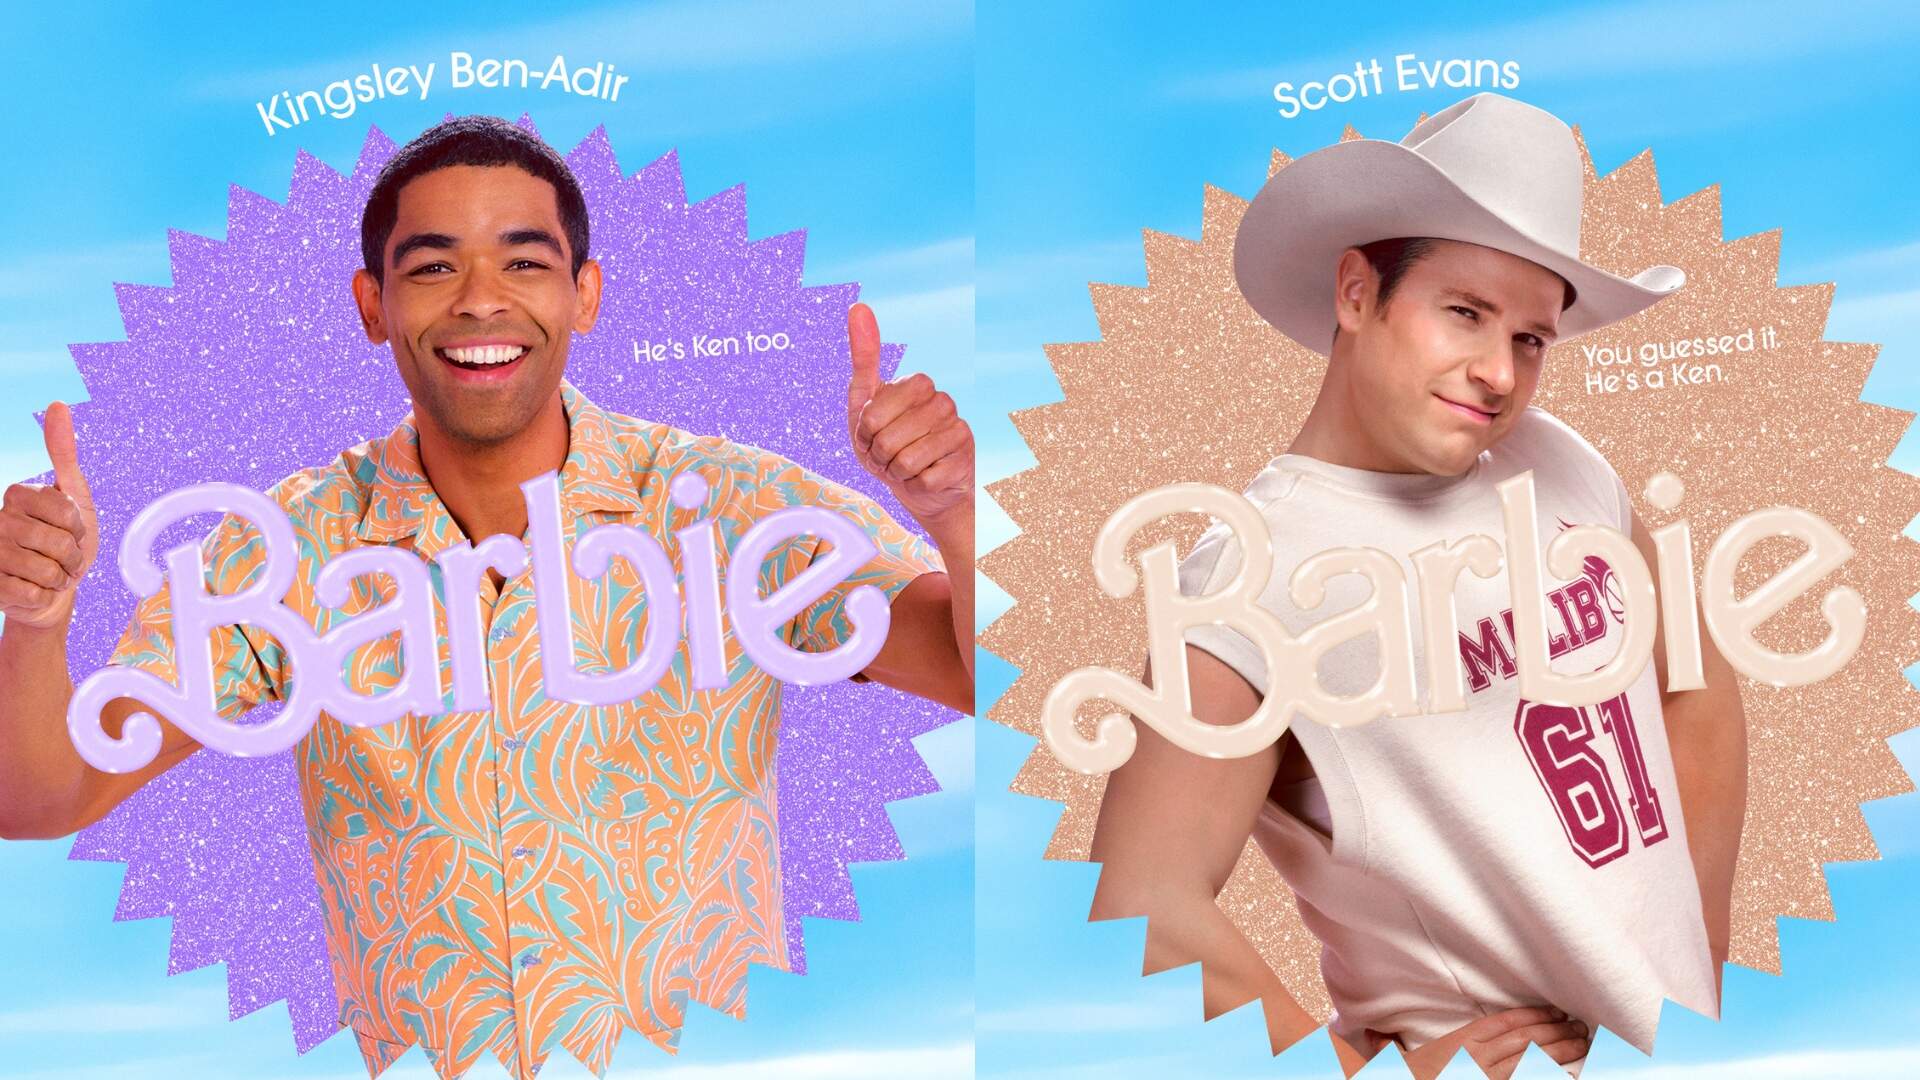 Kingsley Ben-Adir e Scott Evans como Ken em Barbie. (Foto: Reprodução/Barbie)